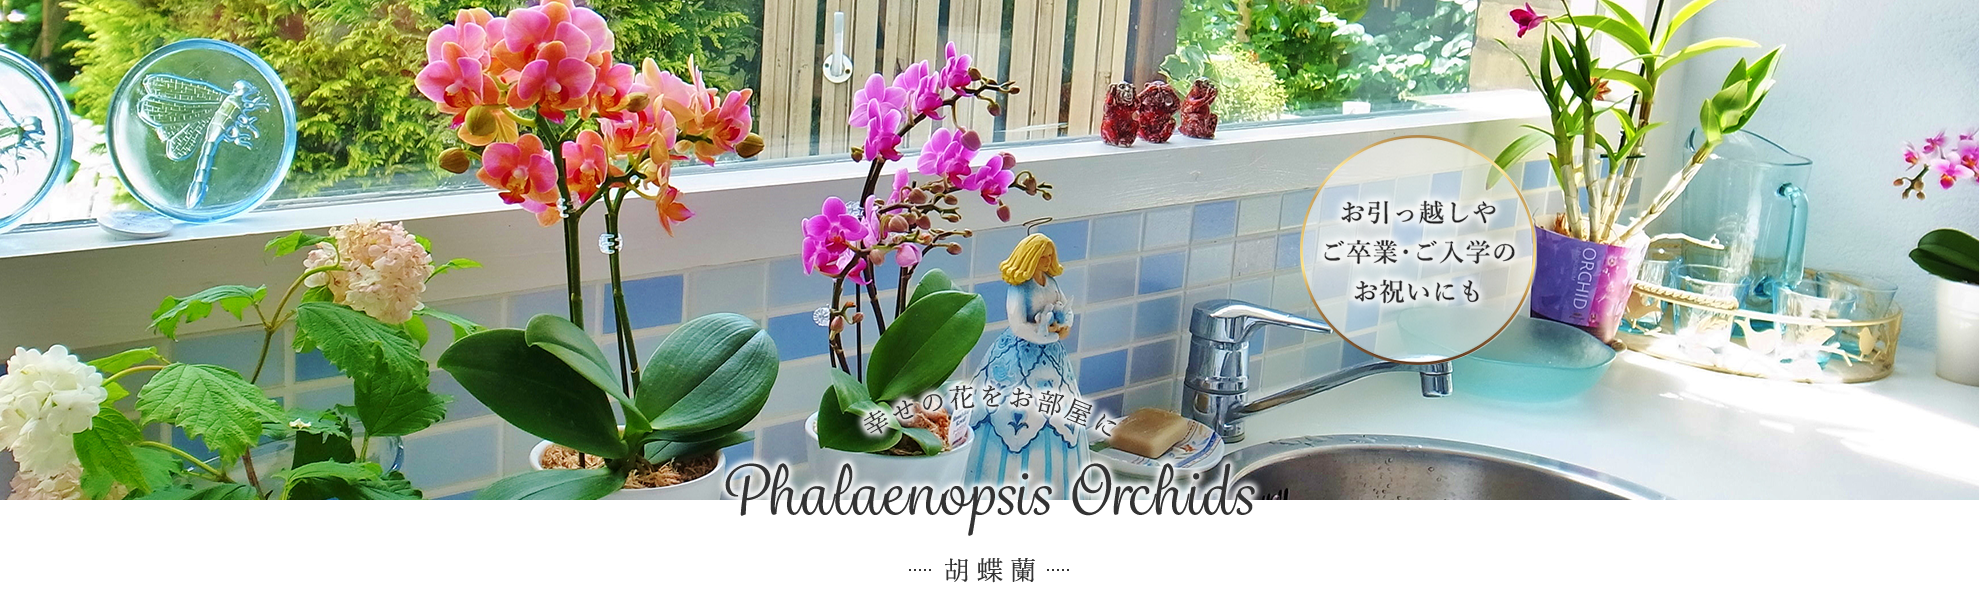 幸せの花をお部屋に Phalaenopsis Orchids